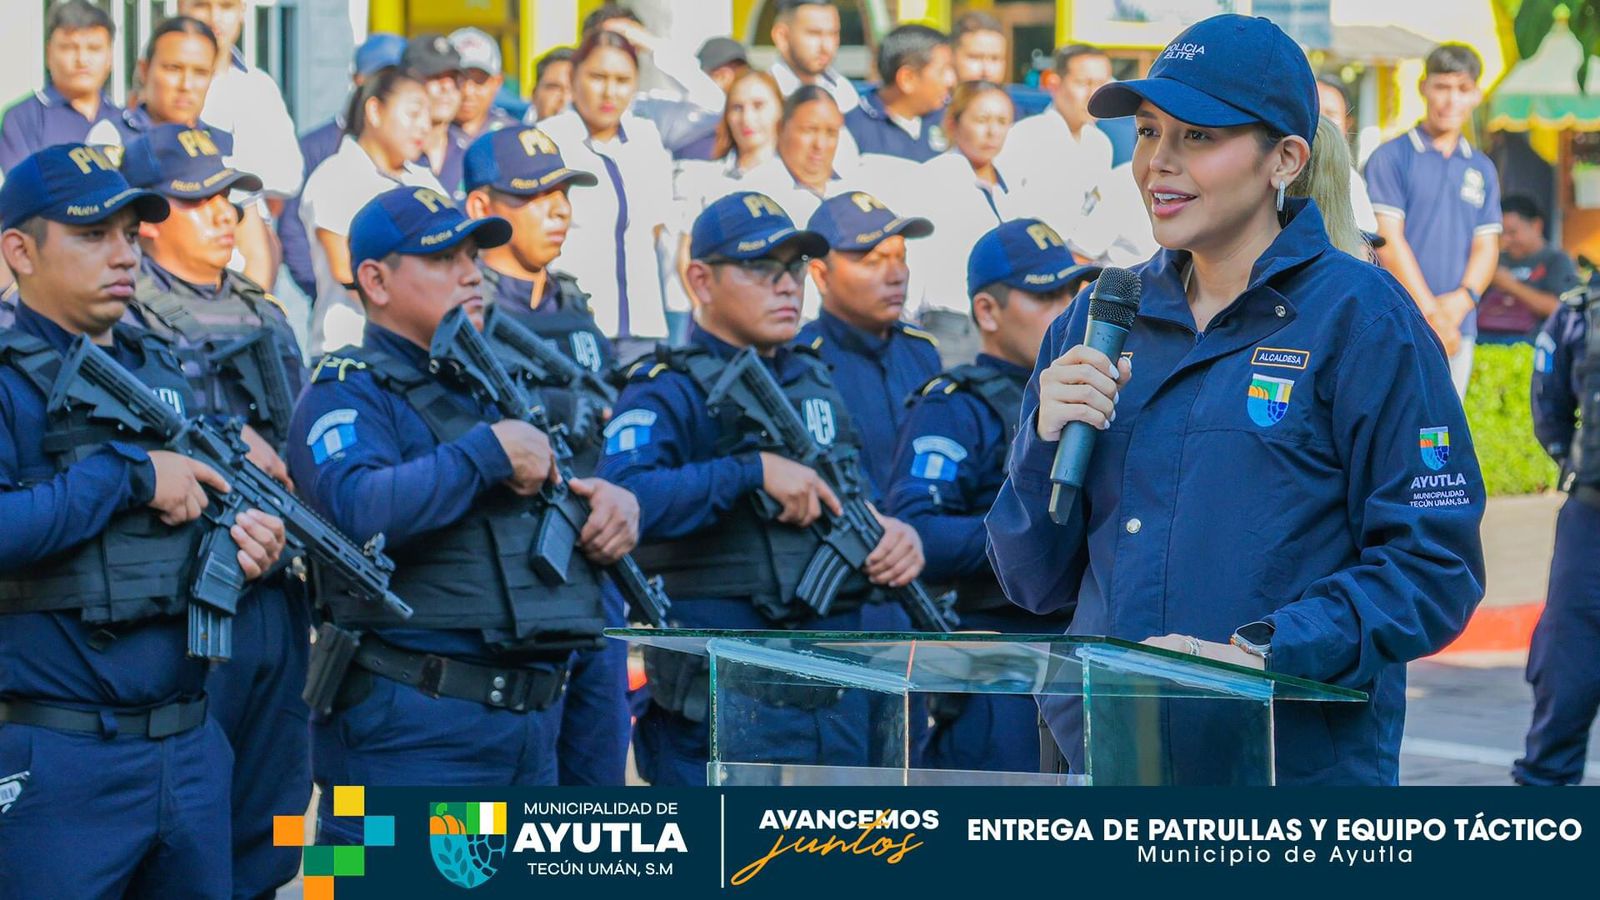 La alcaldesa de Ayutla, San Marcos, Isel Súñiga, durante la entrega de armas largas y equipo táctico a los agentes de la Policía Municipal. (Foto Prensa Libre: Tomada del Facebook de la municipalidad de Ayutla)